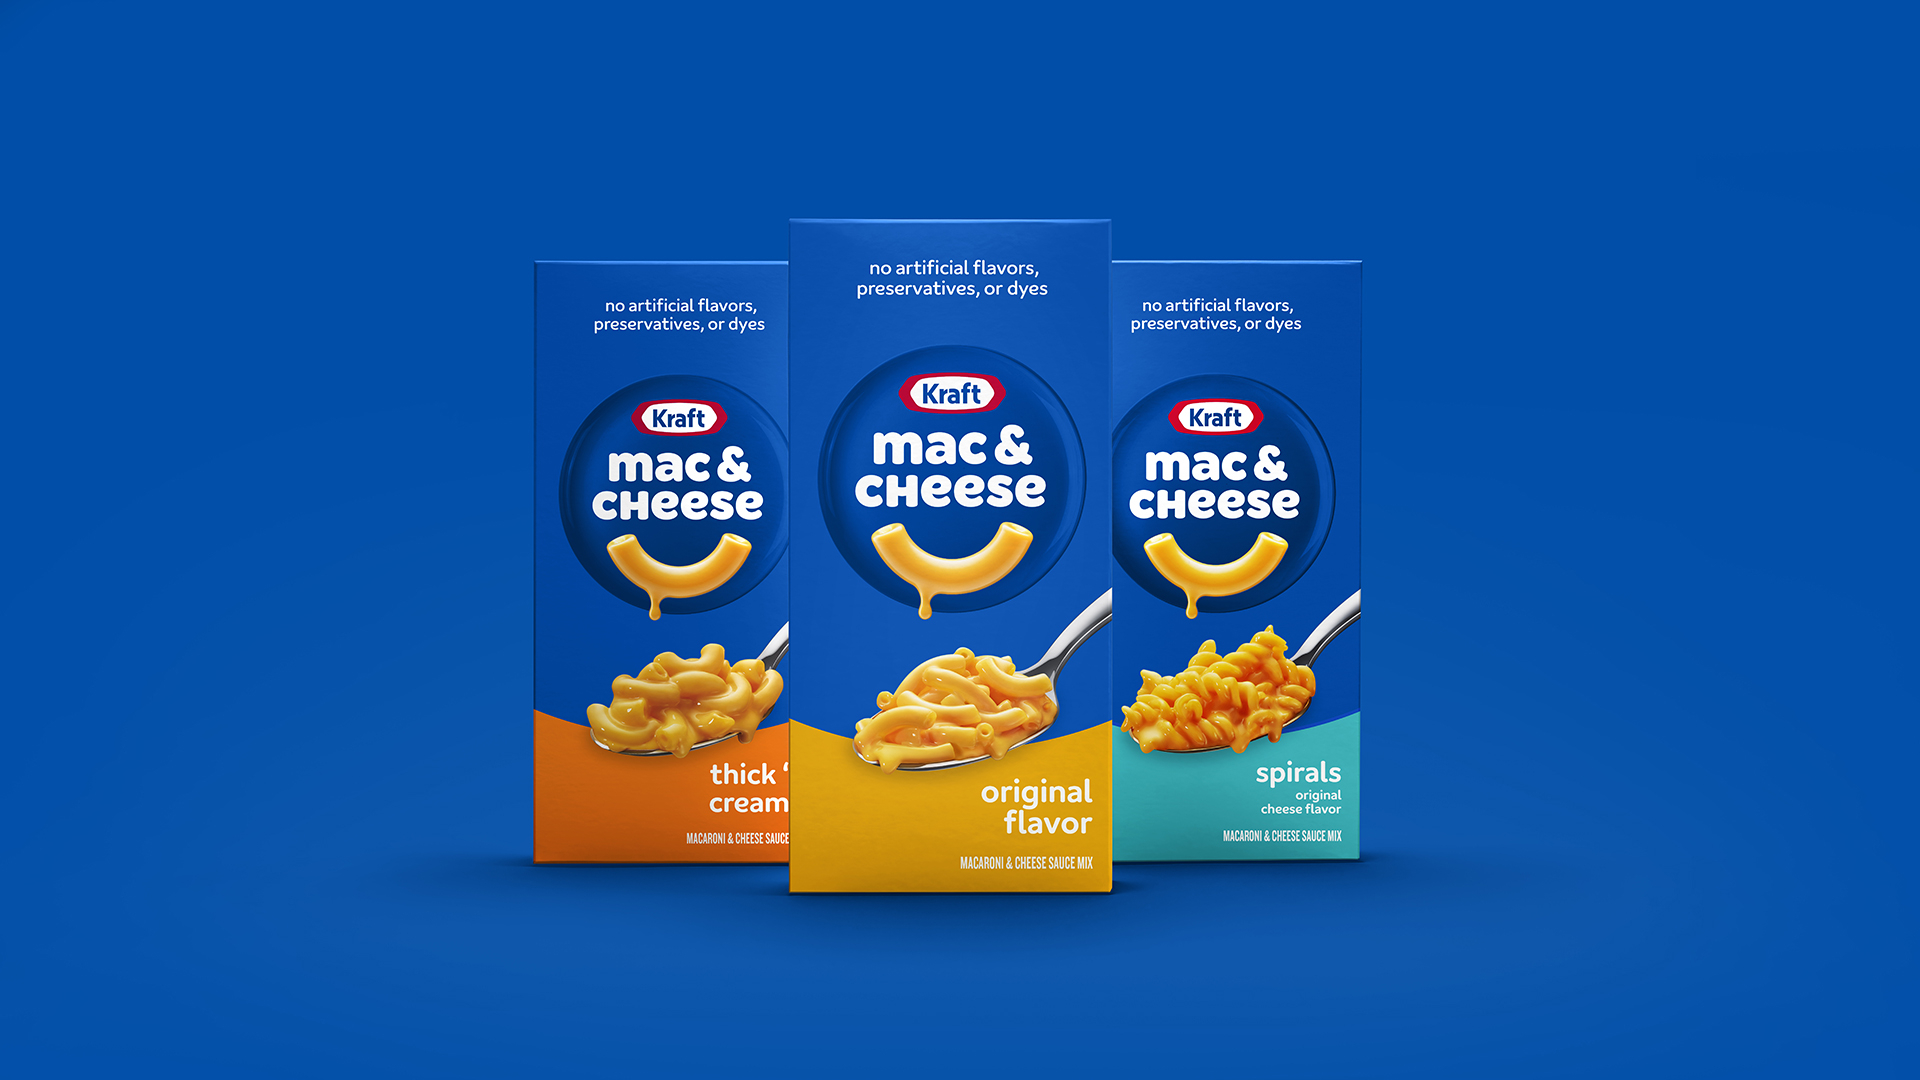 Kraft Macaroni and Cheese heien nun Kraft Mac & Cheese und haben ein neues Packaging - Quelle: Business Wire